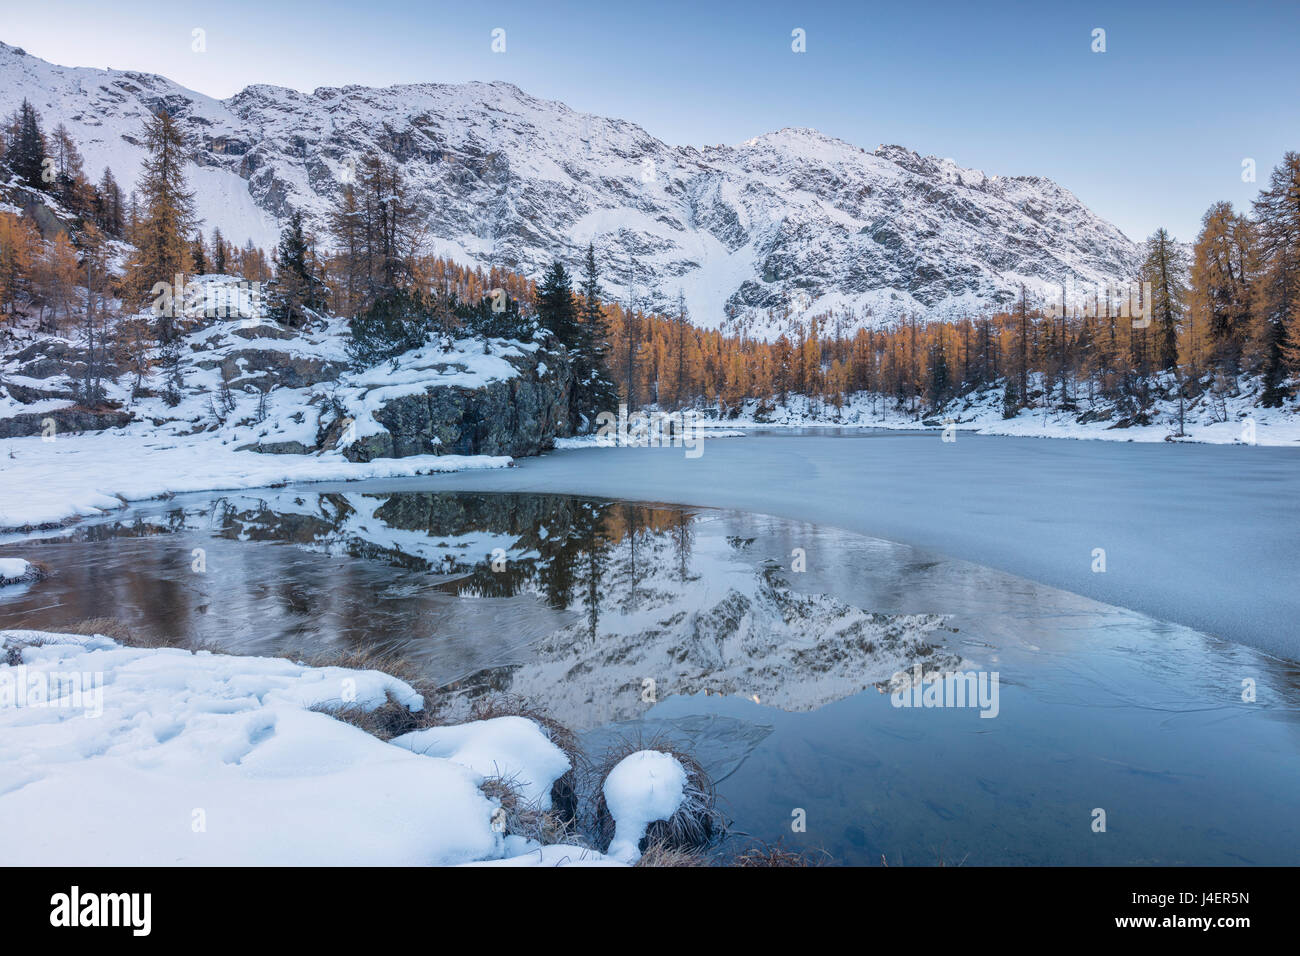 Le cime innevate sono riflesse nel lago ghiacciato Mufule, Malenco Valley, provincia di Sondrio e della Valtellina, Lombardia, Italia Foto Stock